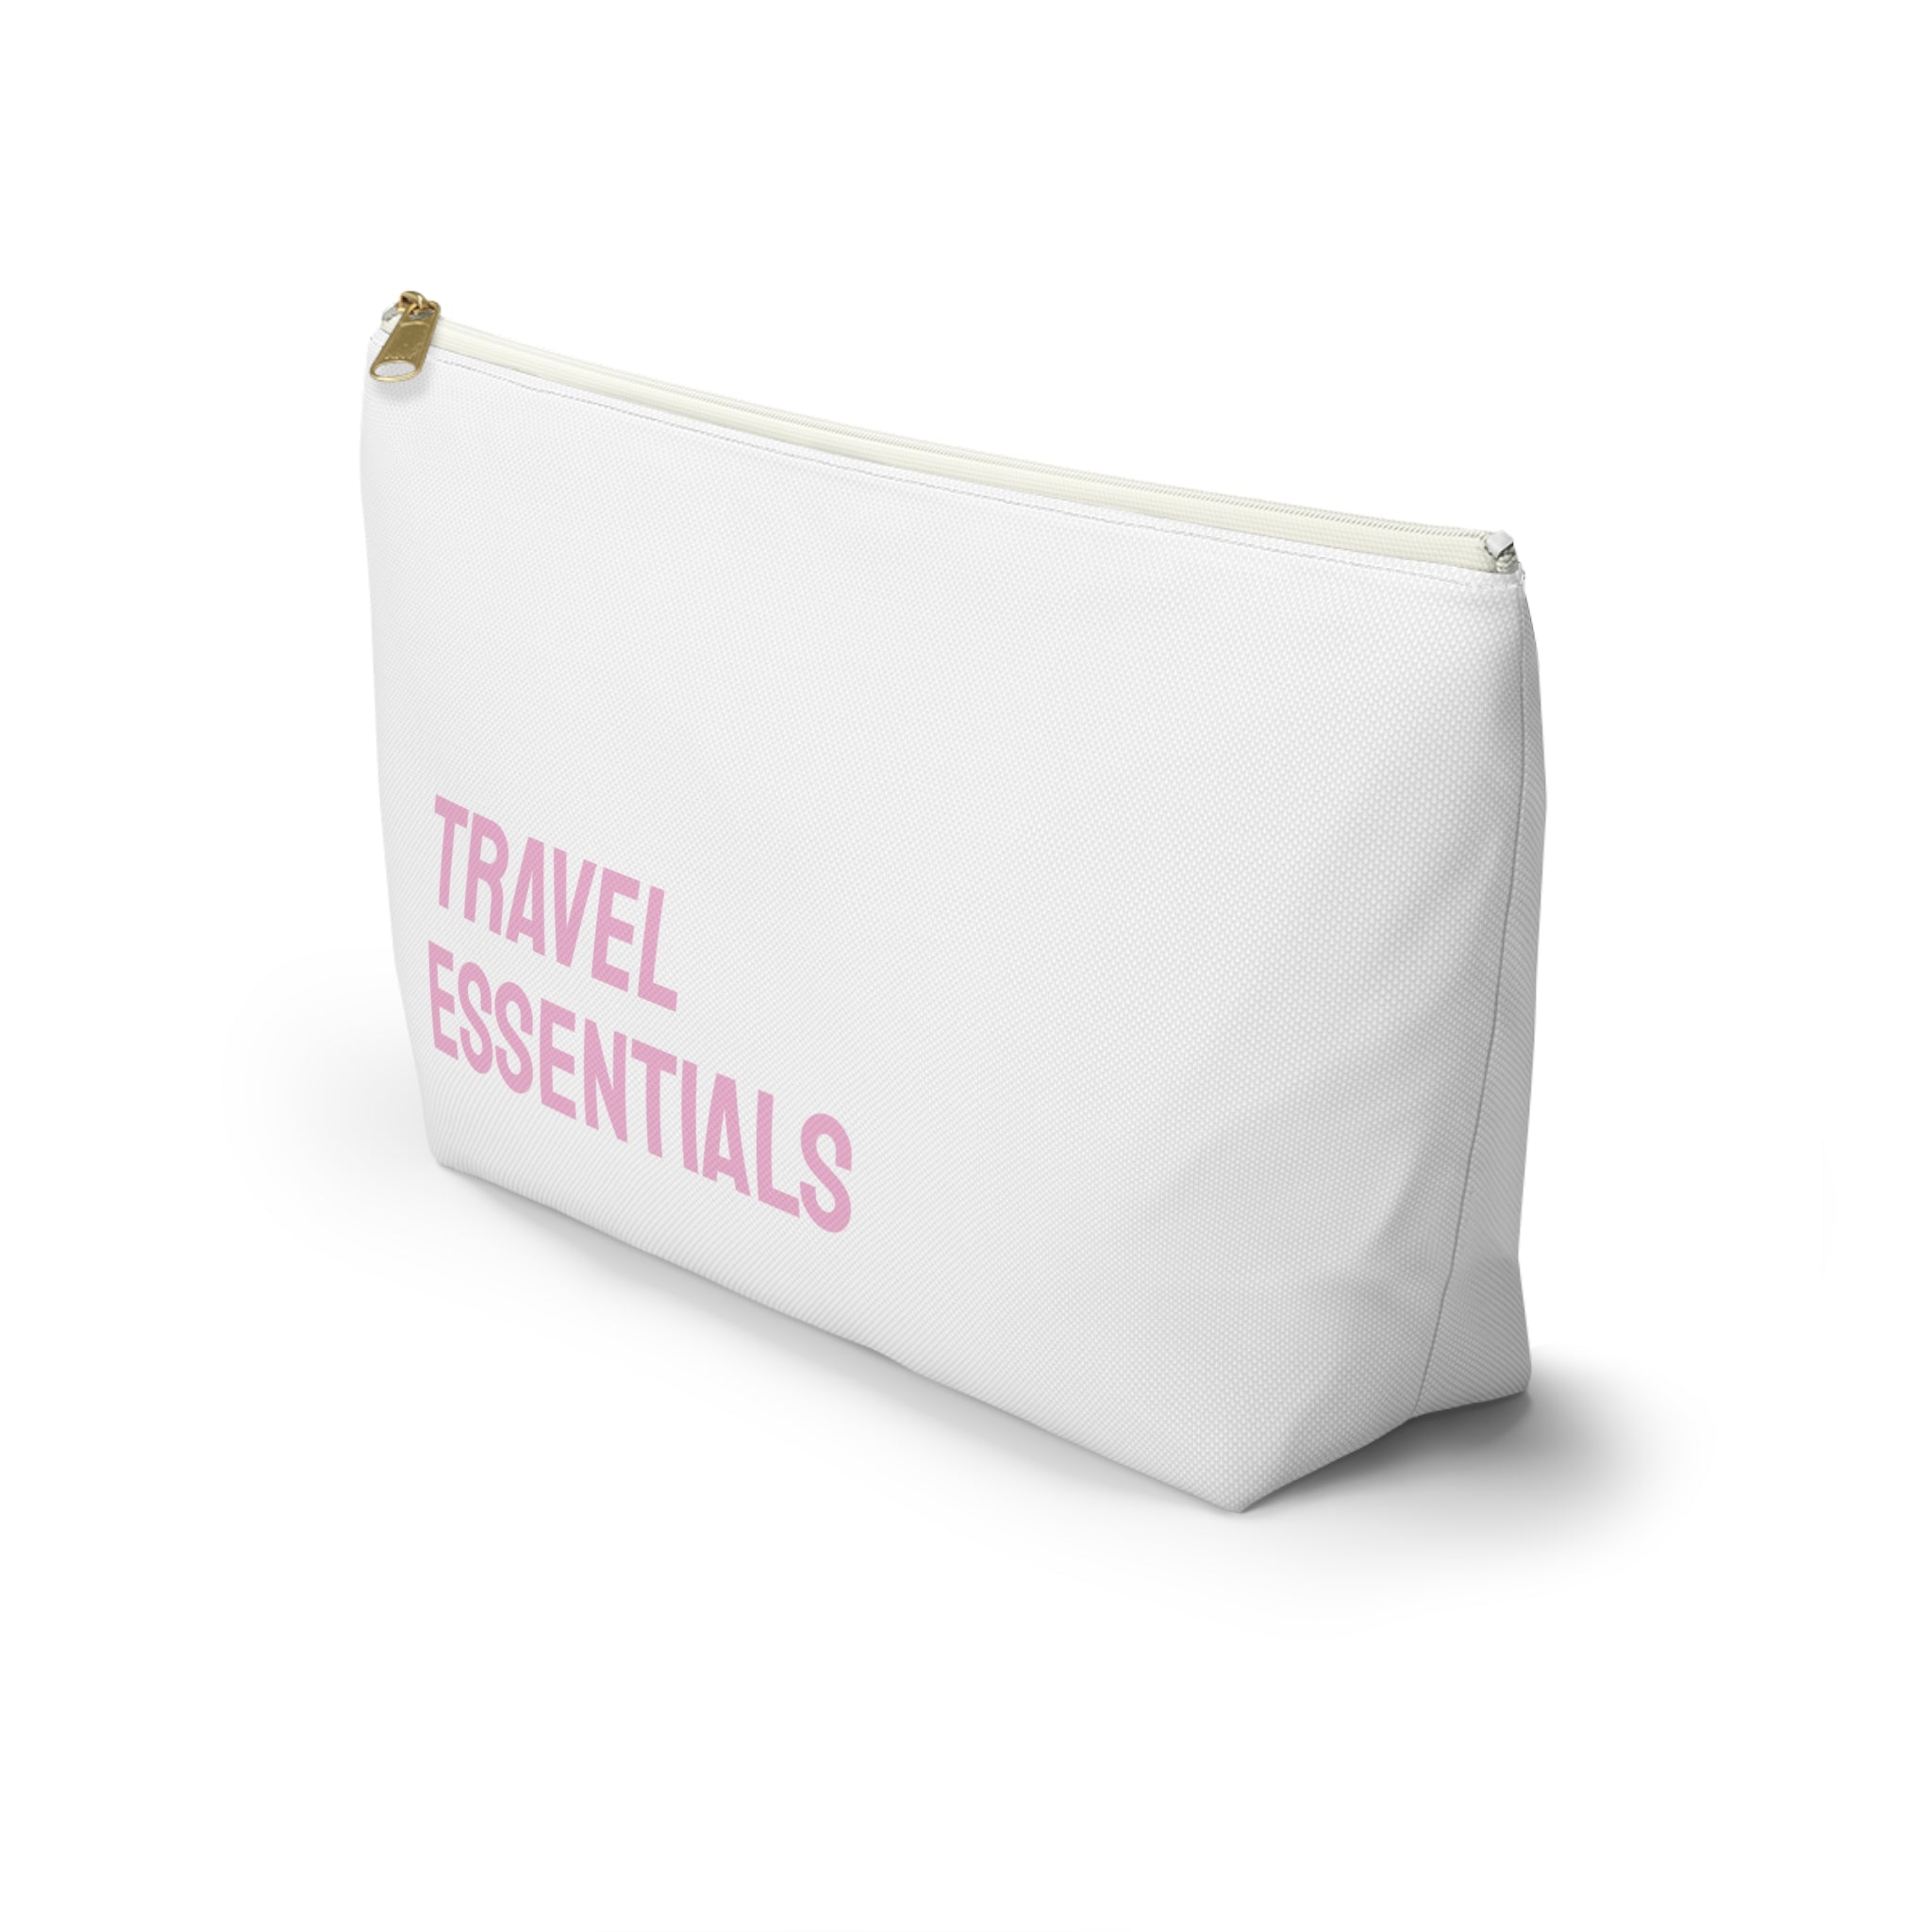 Travel essentials Pouch (Pink)